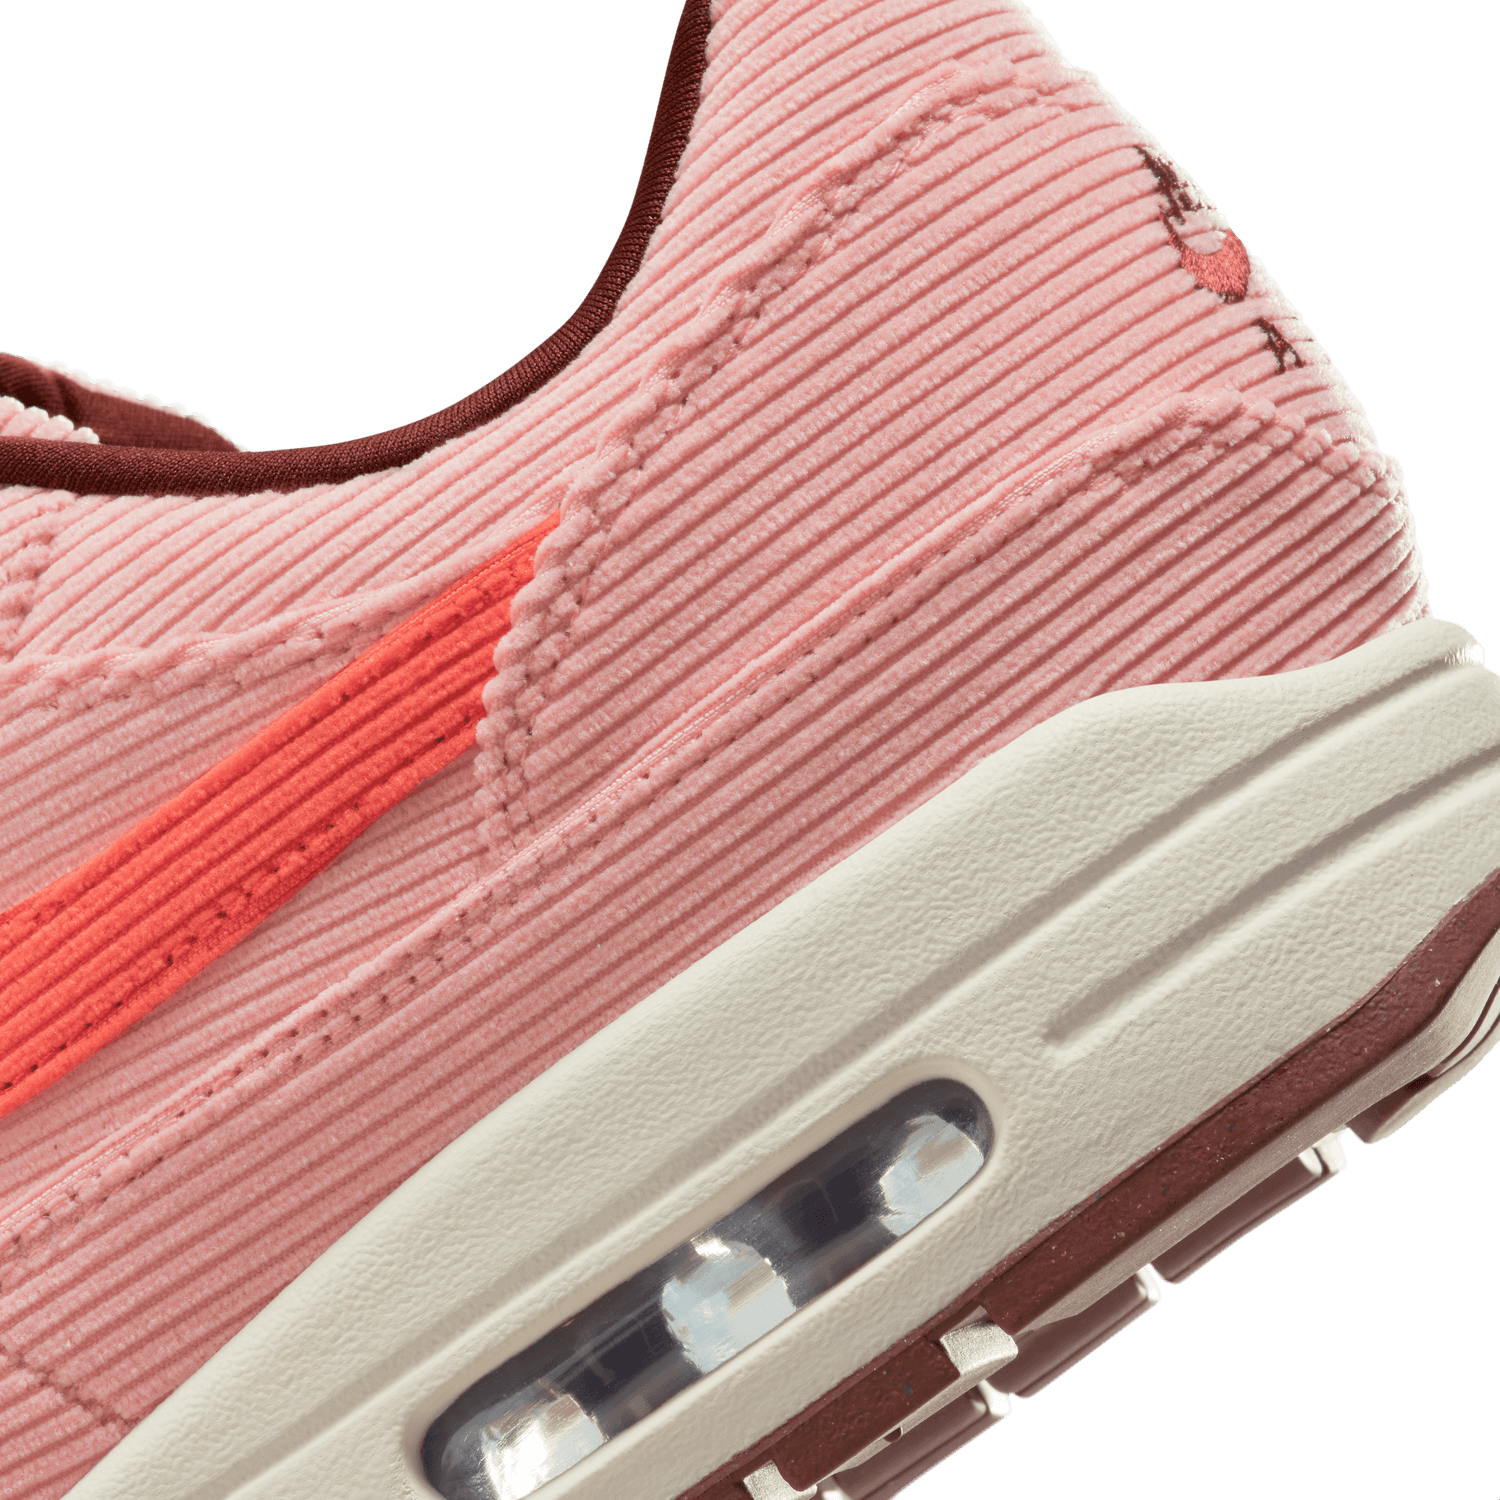 Nike Air Max 1 Premium (FB8915-600)